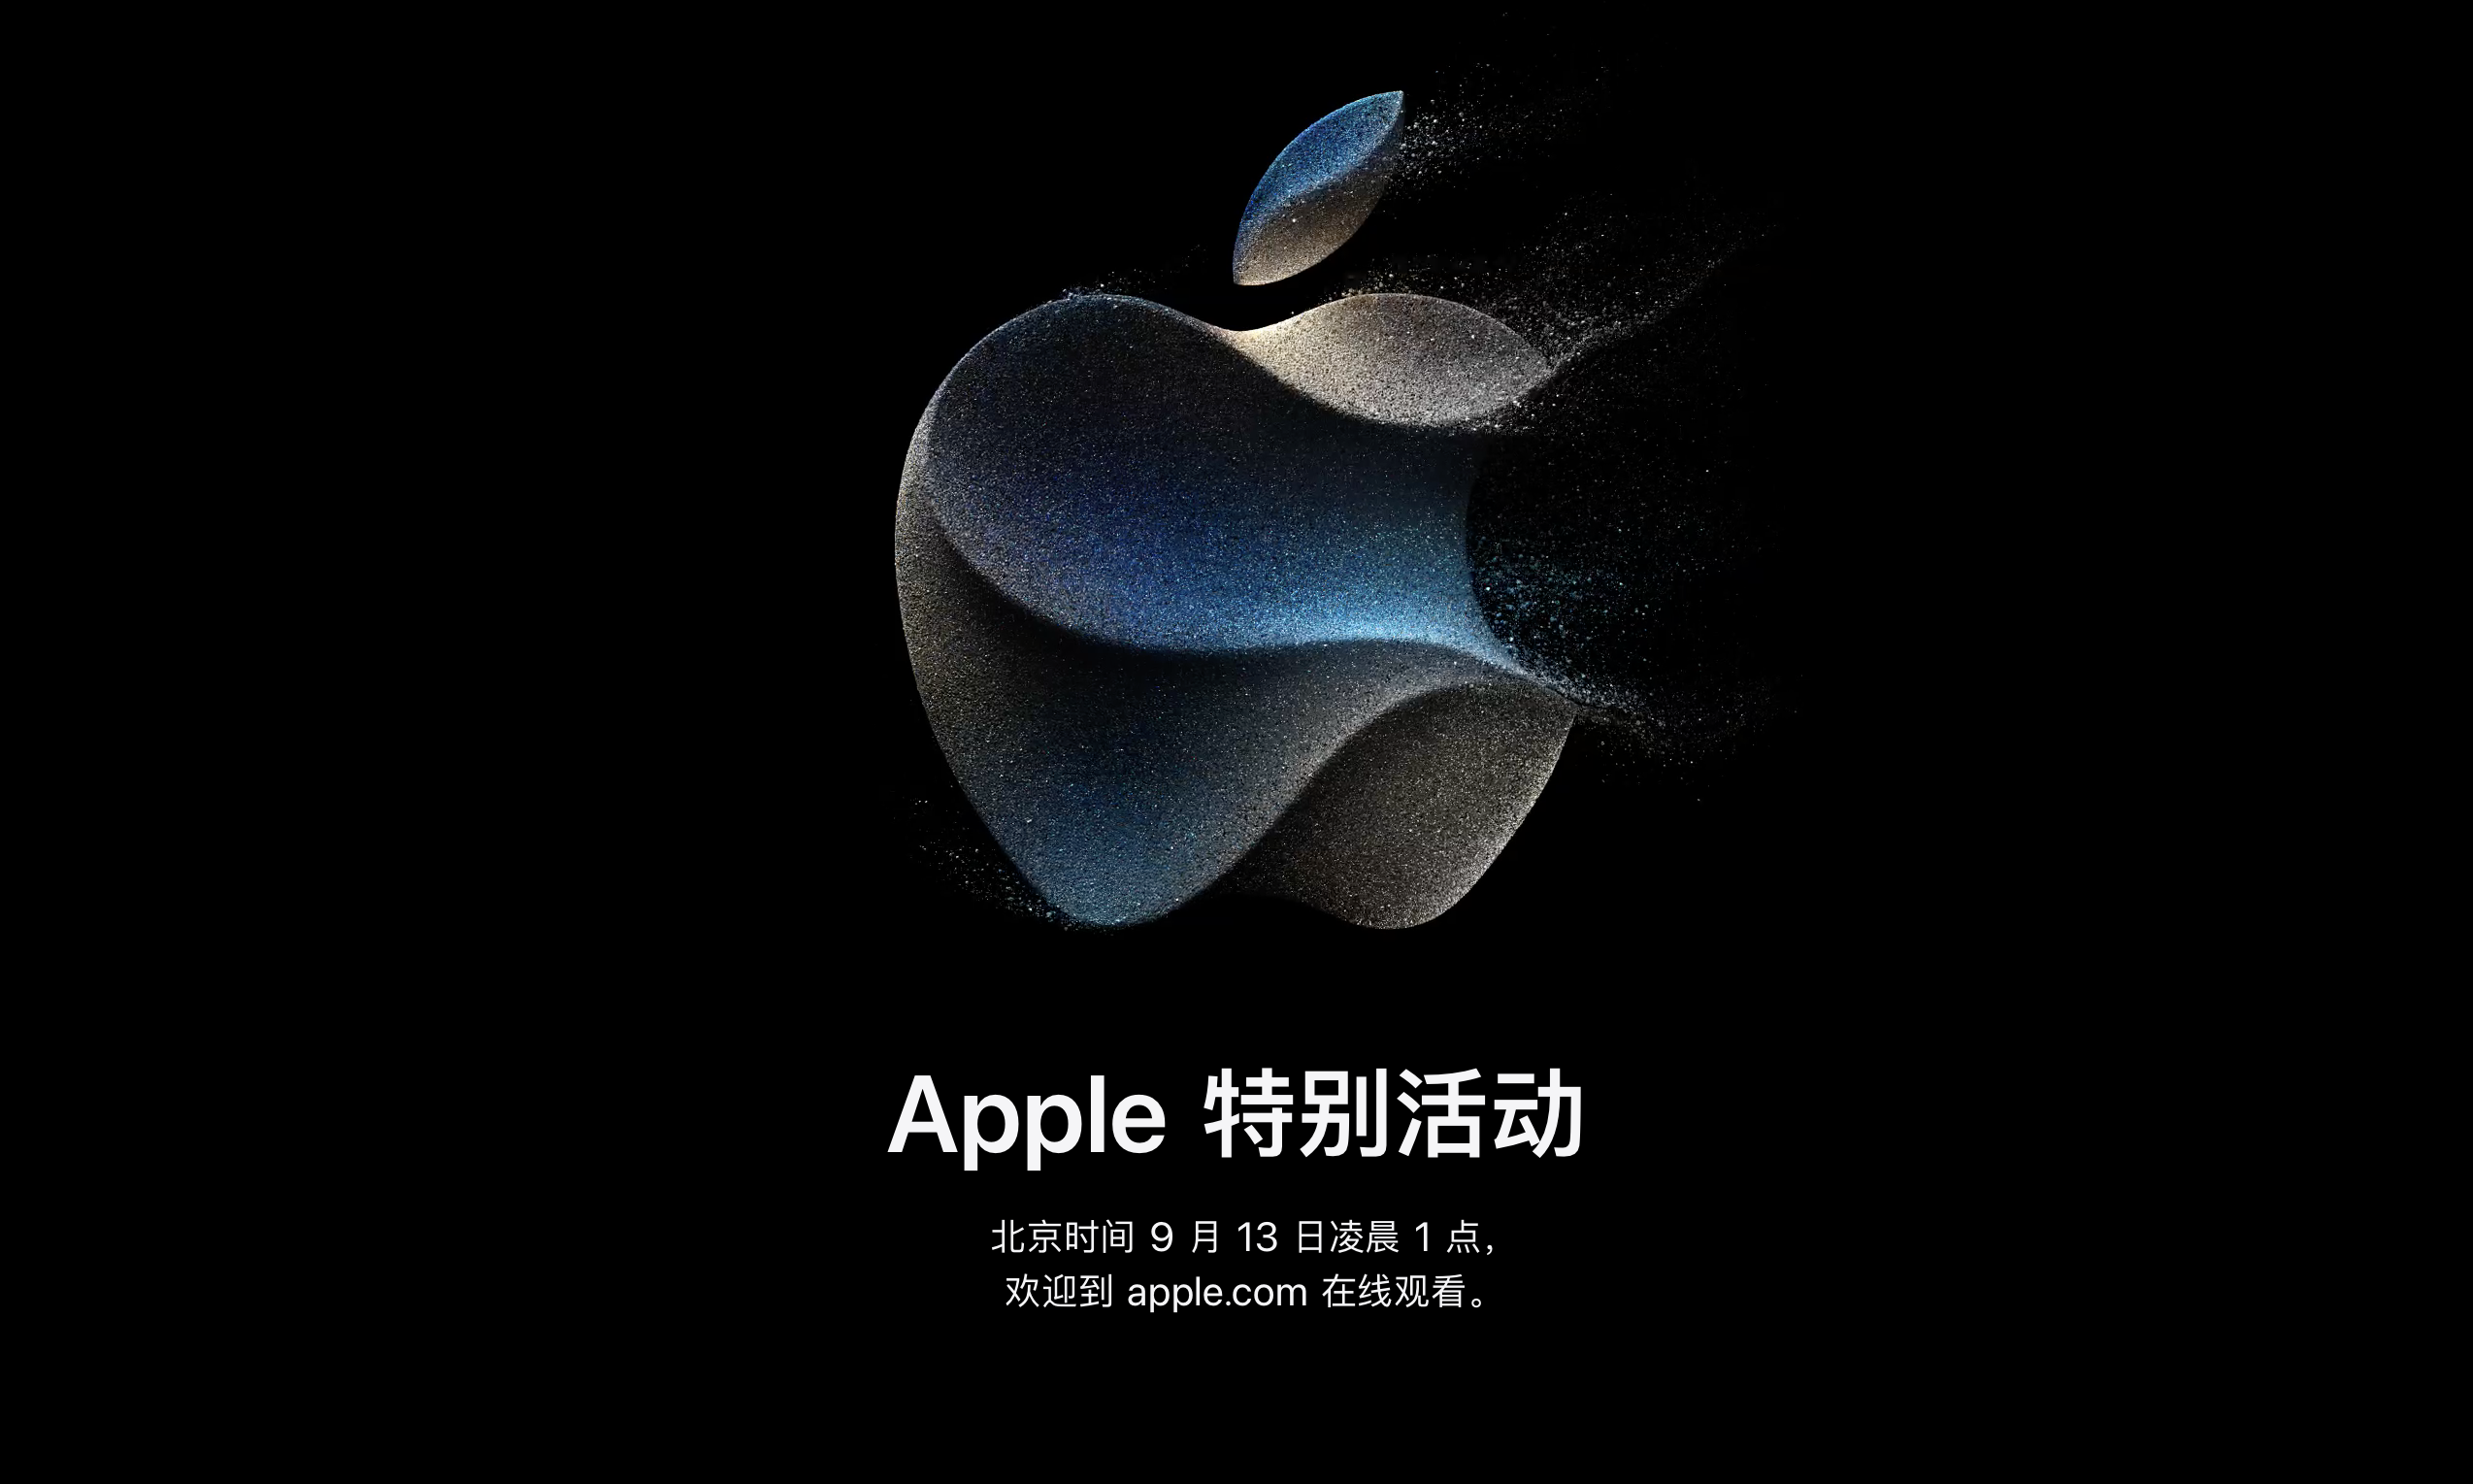 苹果正式公布将于 9 月 13 日举行秋季新品发布会